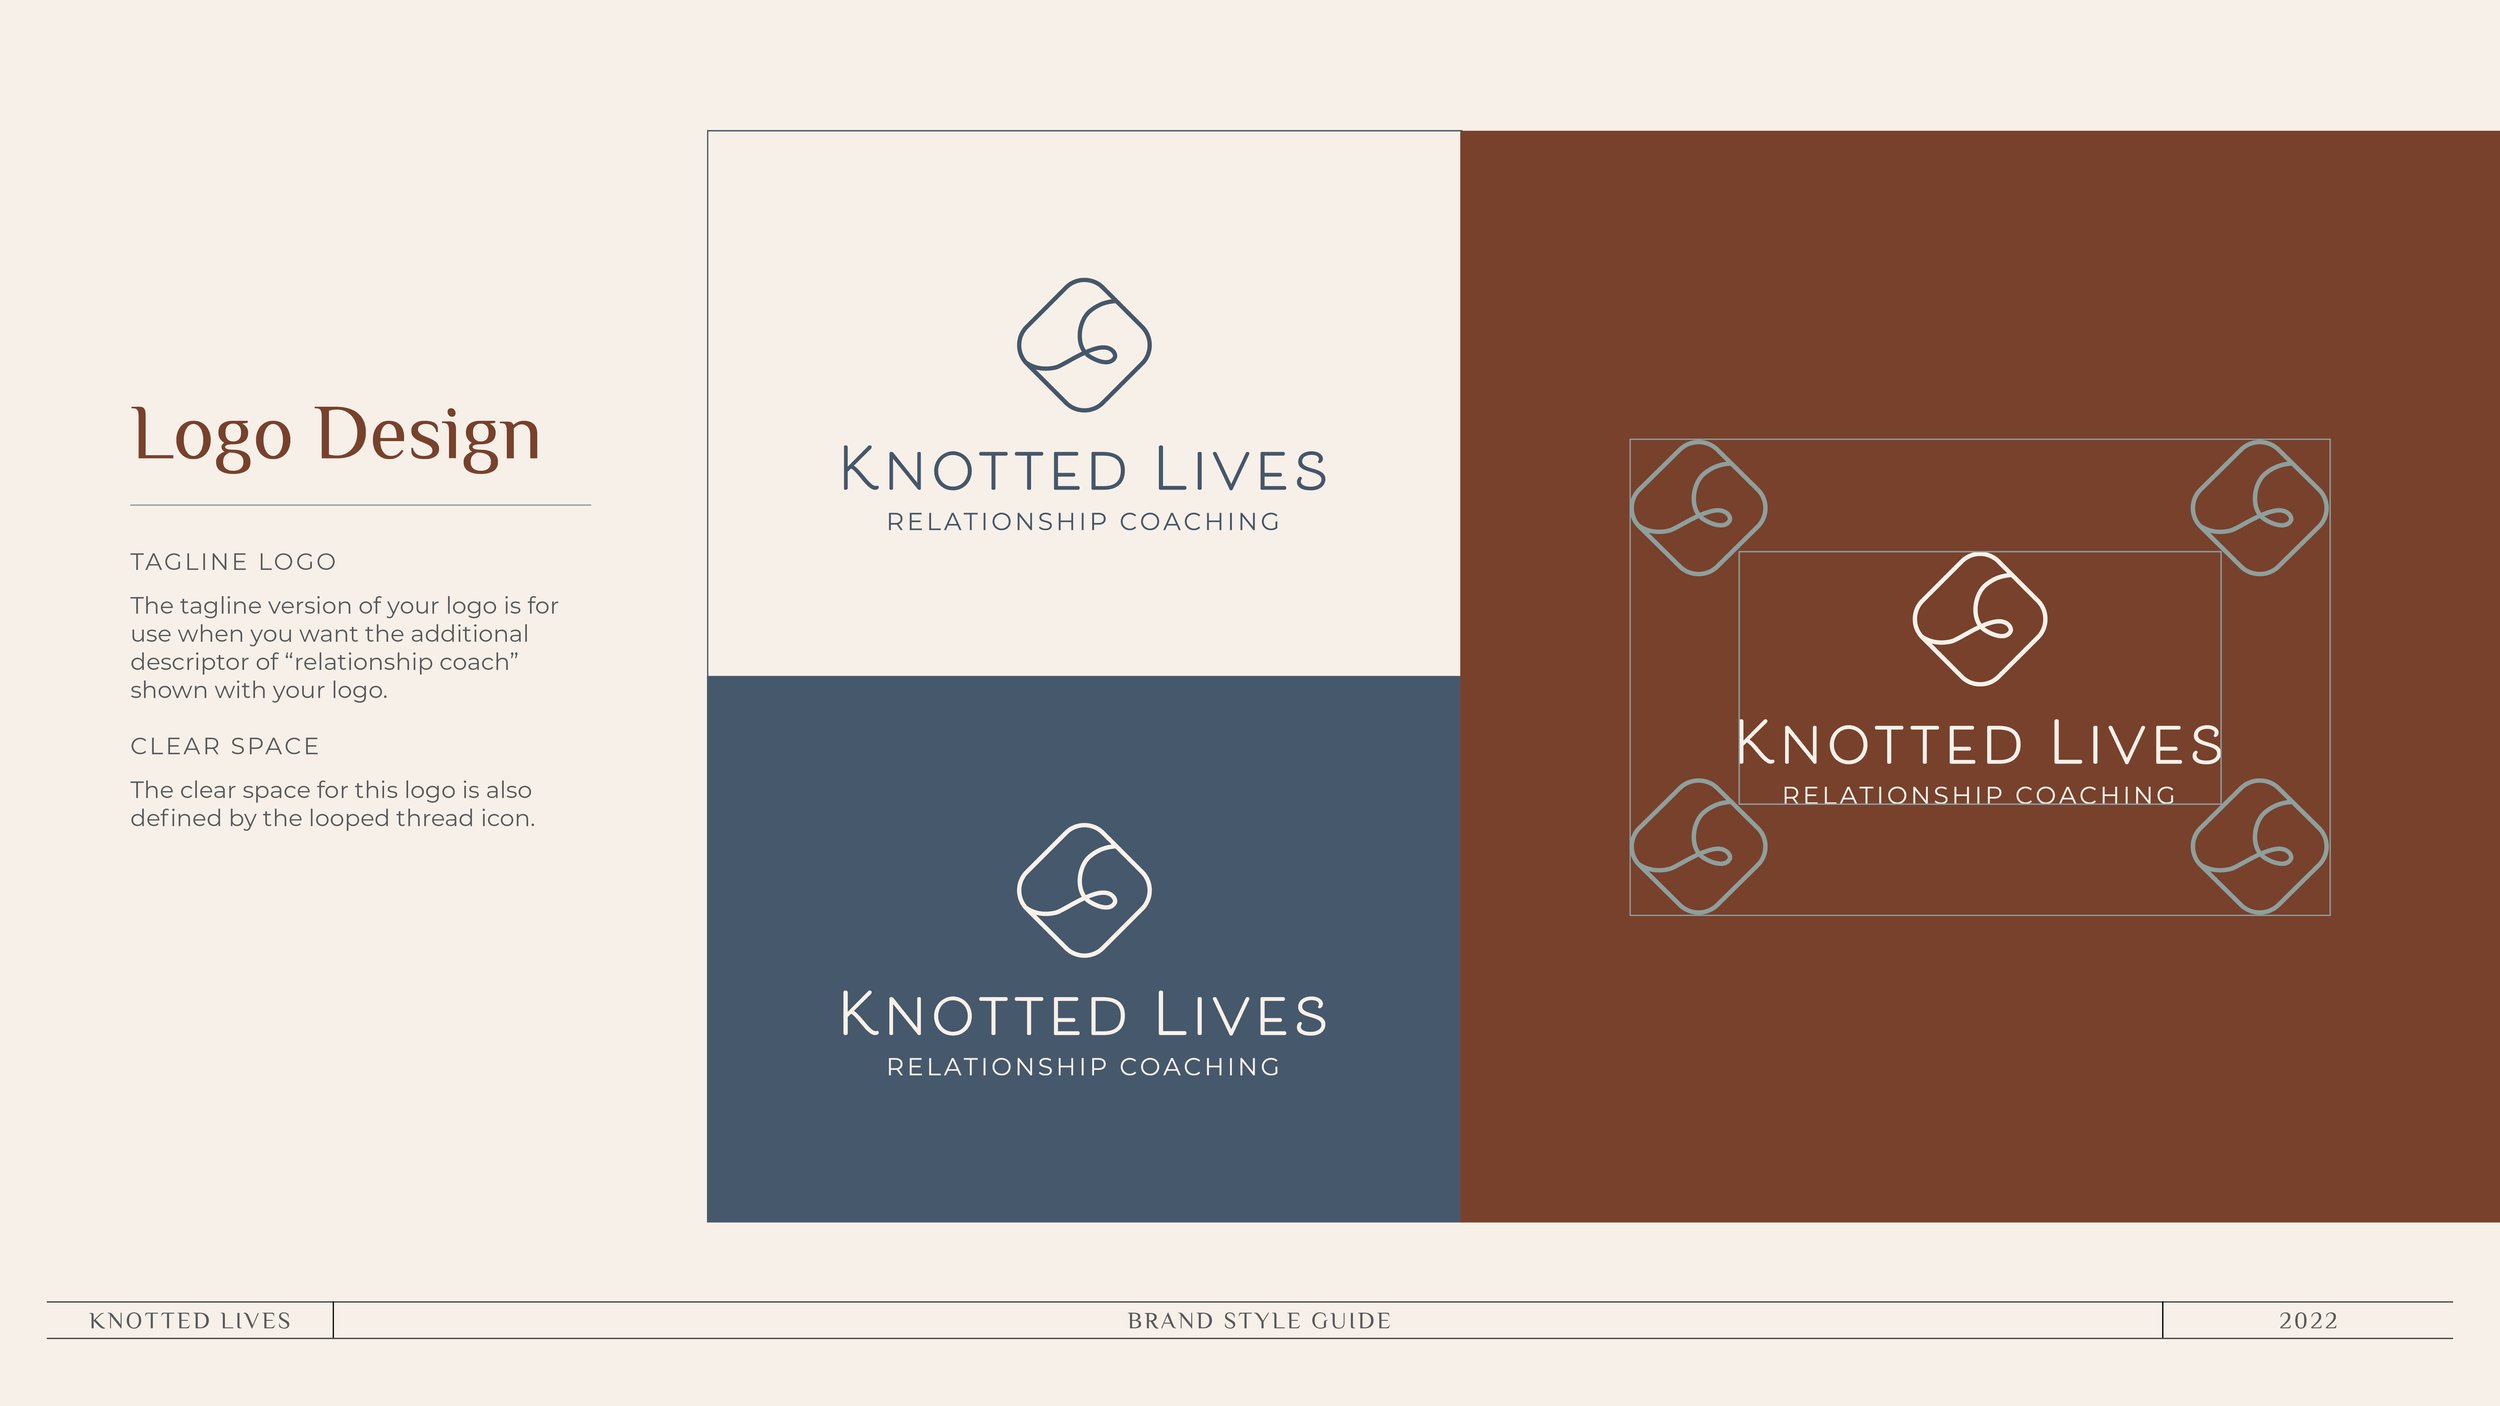 KnottedLives_BrandStyleGuide_20225.jpg